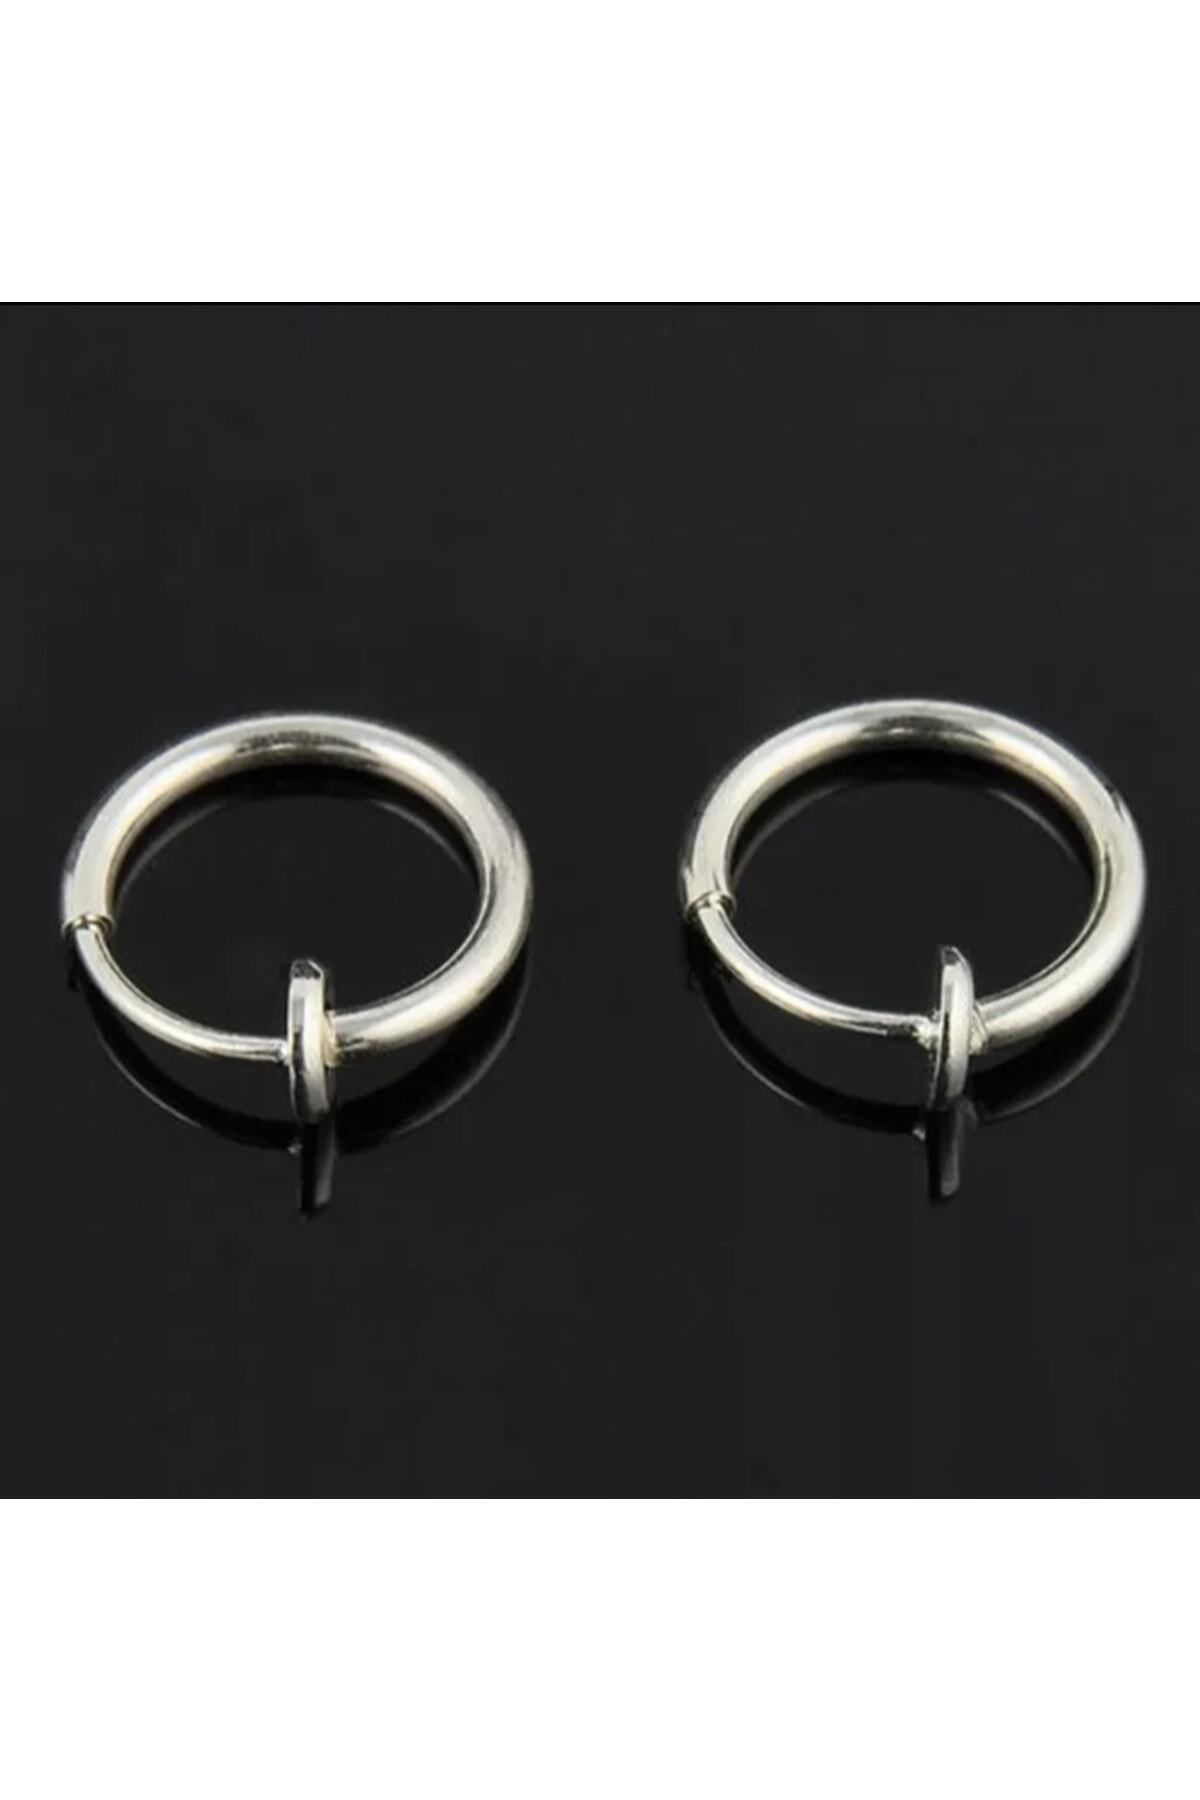 Penguen Dükkan Fake Piercing-küpe 2'li Gümüş Renk Sıkıştırmalı 316l Paslanmaz Çelik (kulak-burun-dudak)